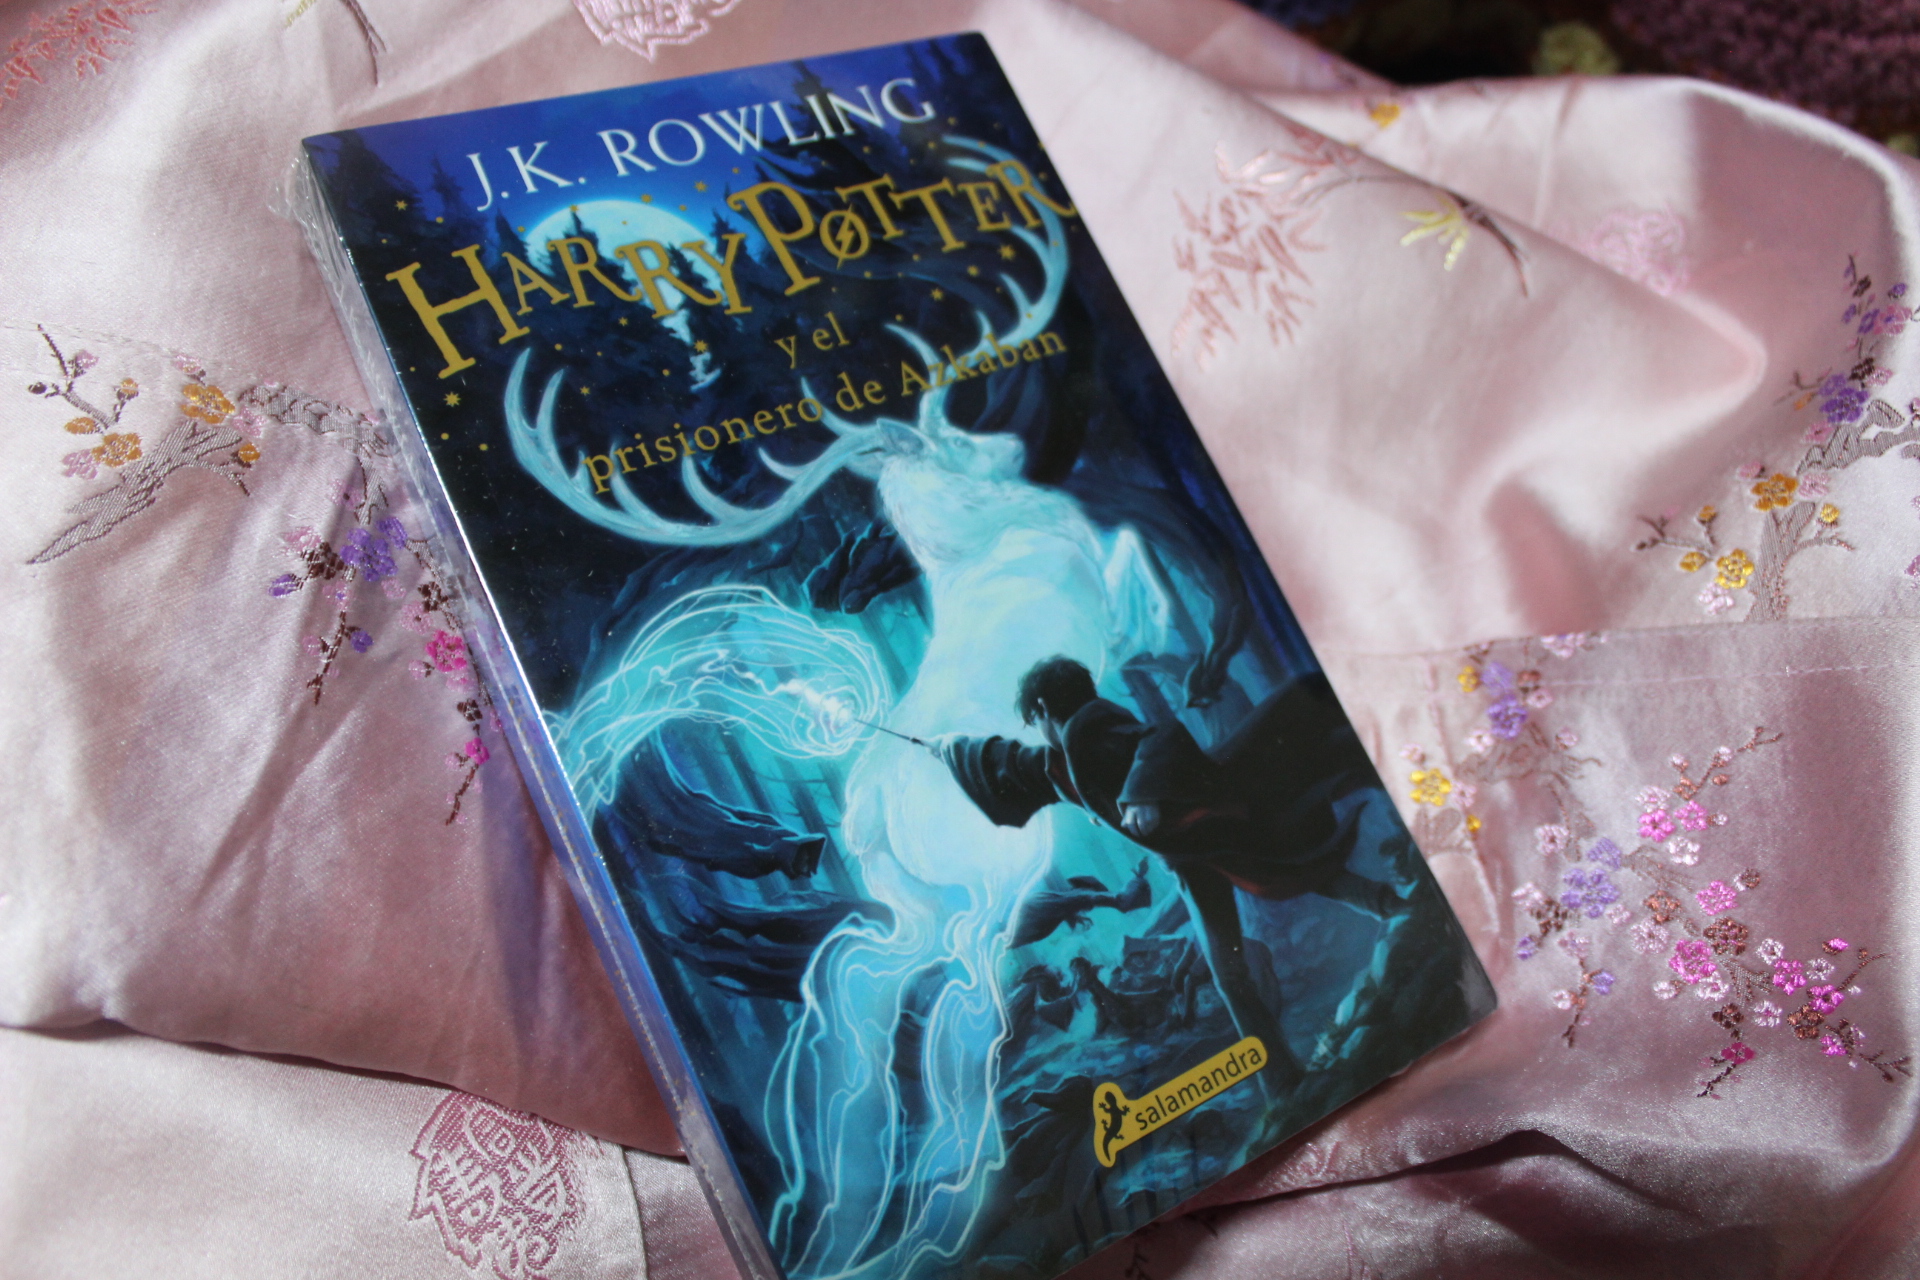 Libro: Harry Potter Y El Prisionero De Azkaban por J. K Rowling